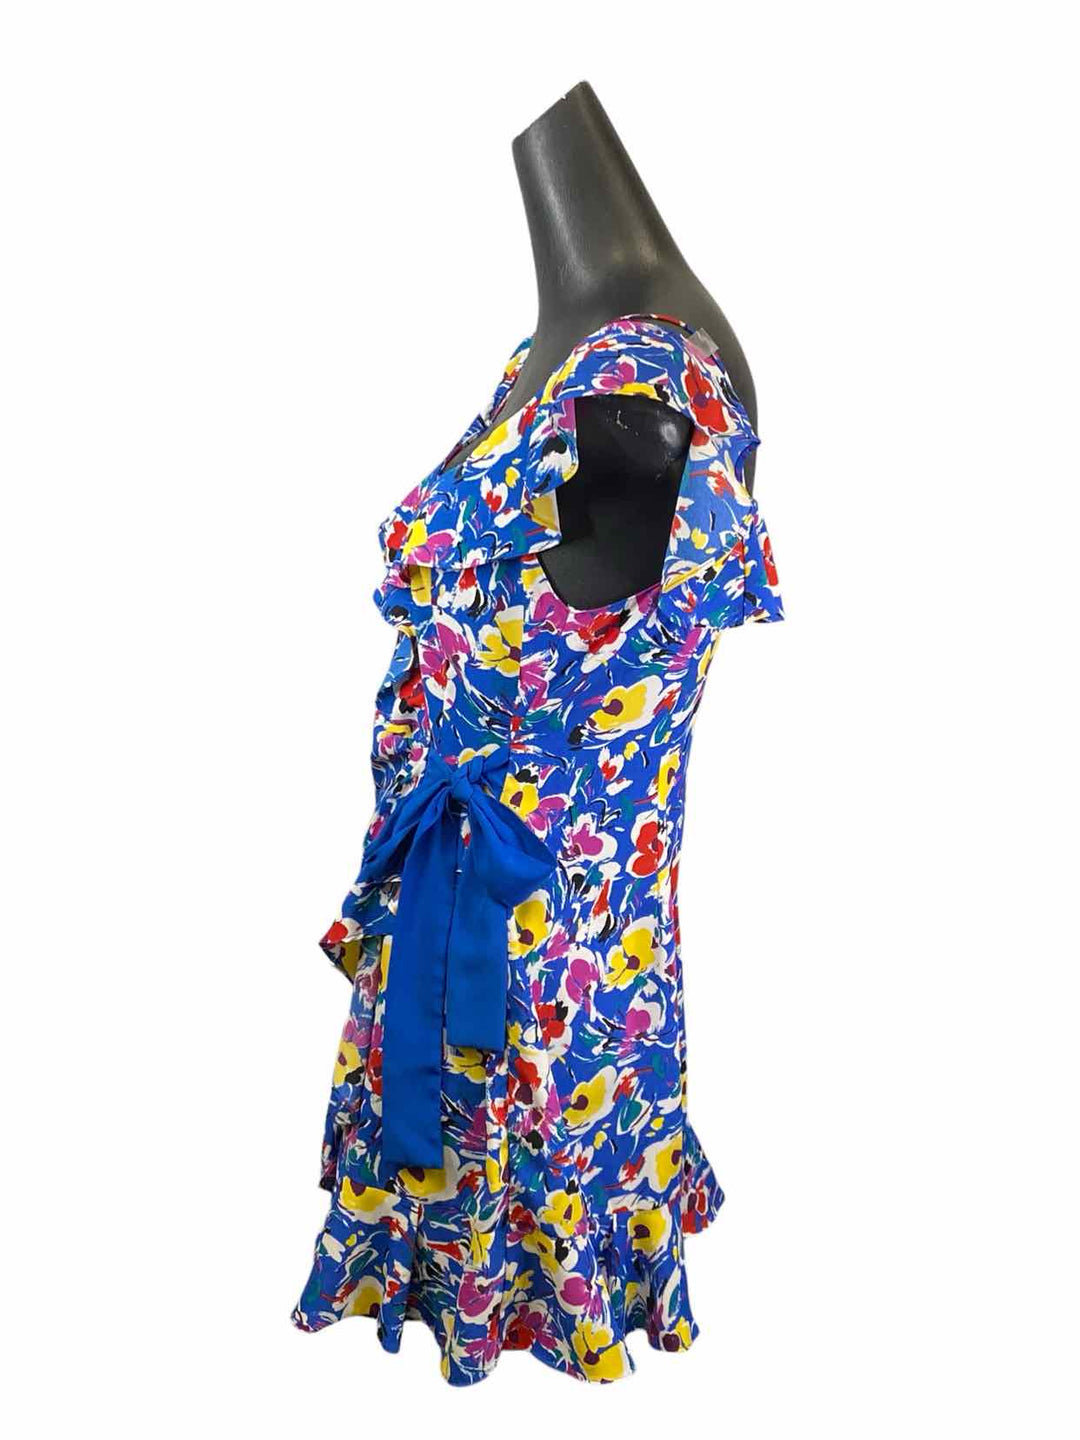 TOPSHOP Size 10 Blue Multi Floral Dress